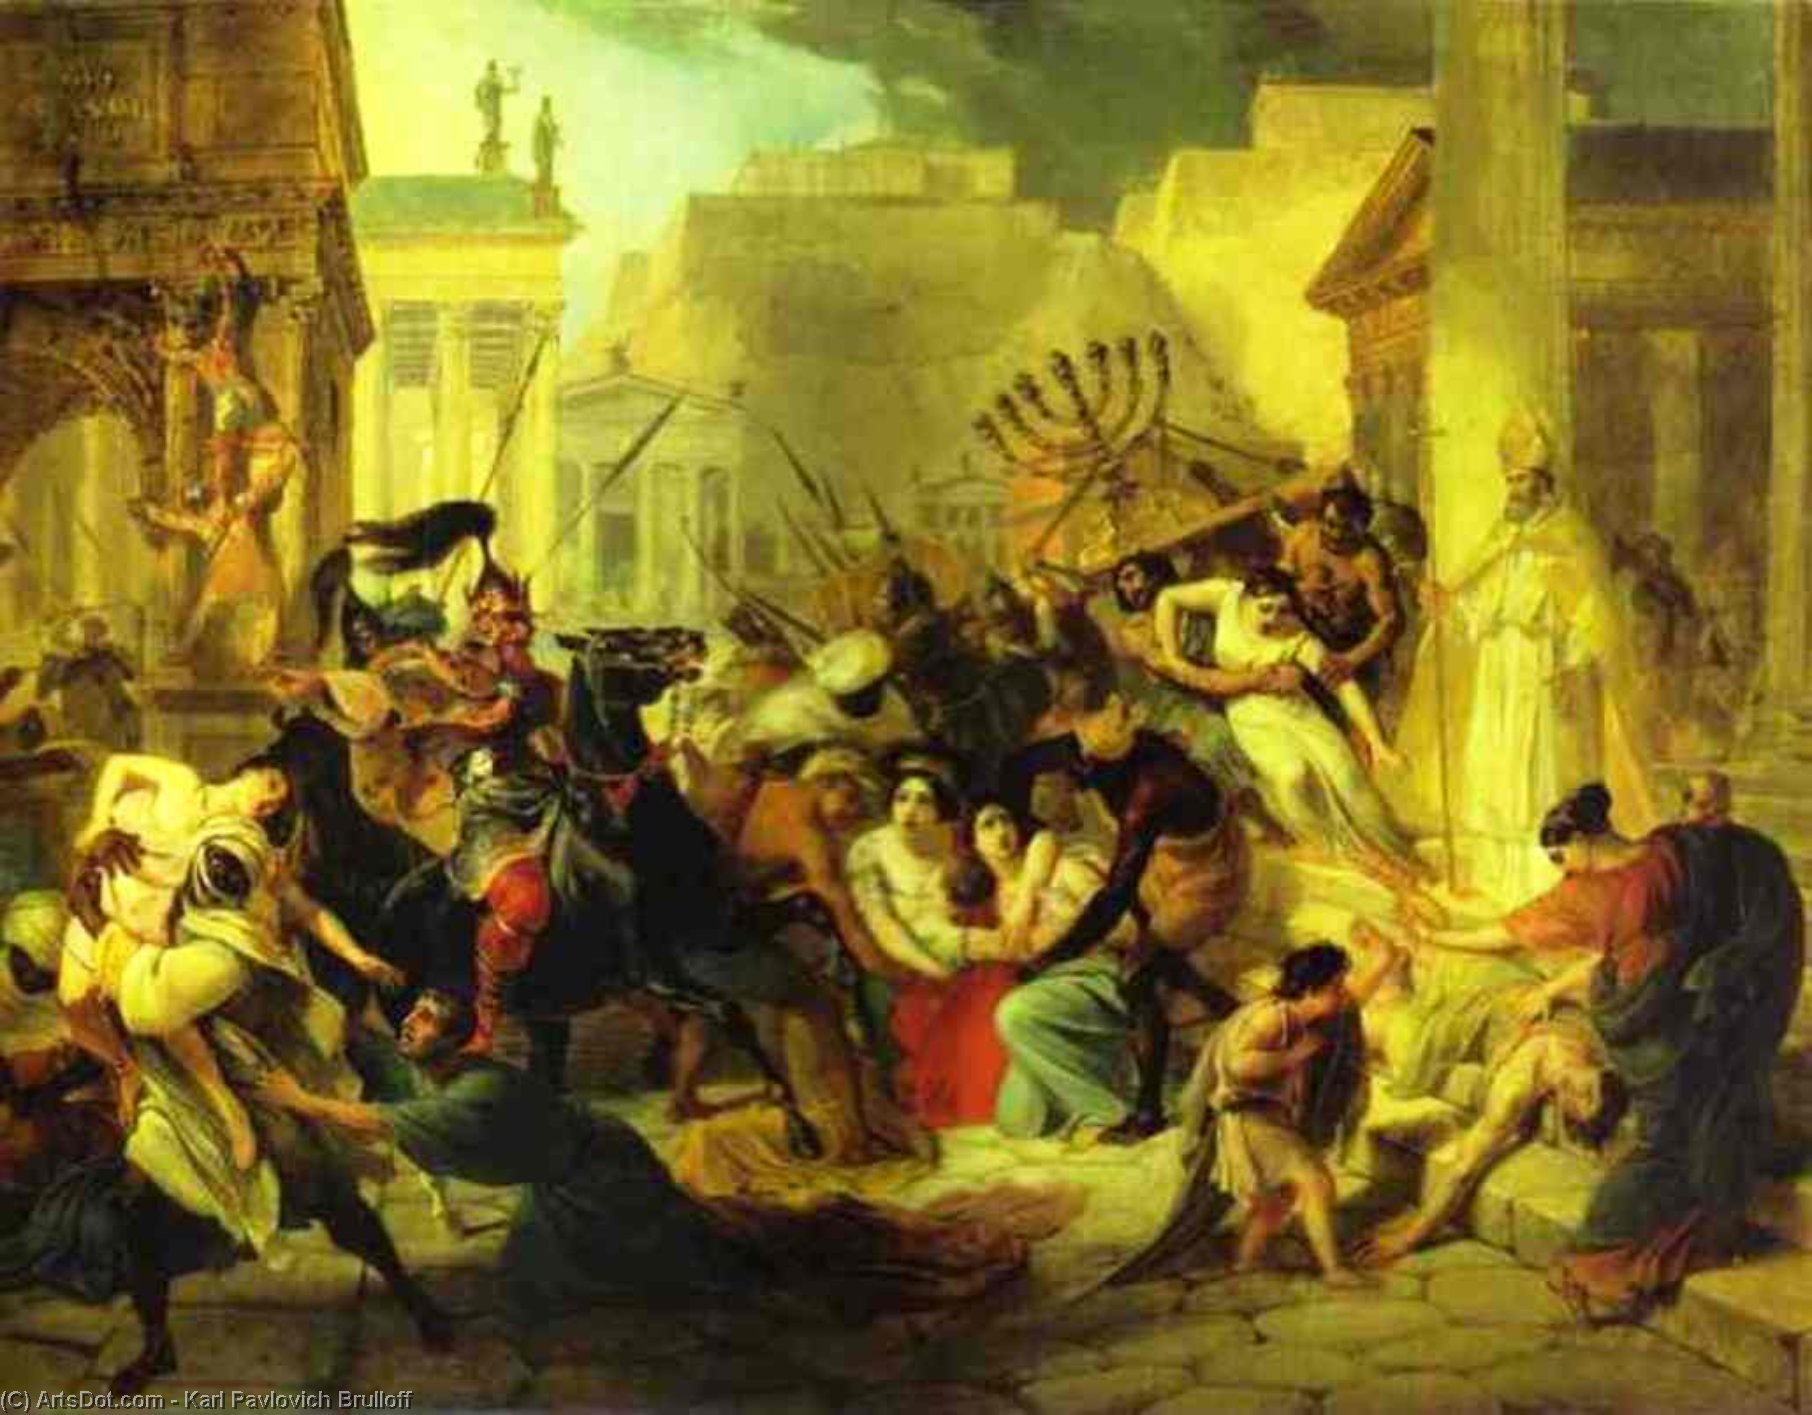 顺序 藝術再現 Genserich的入侵罗马。 研究, 1833 通过 Karl Pavlovich Brulloff (1799-1852) | ArtsDot.com